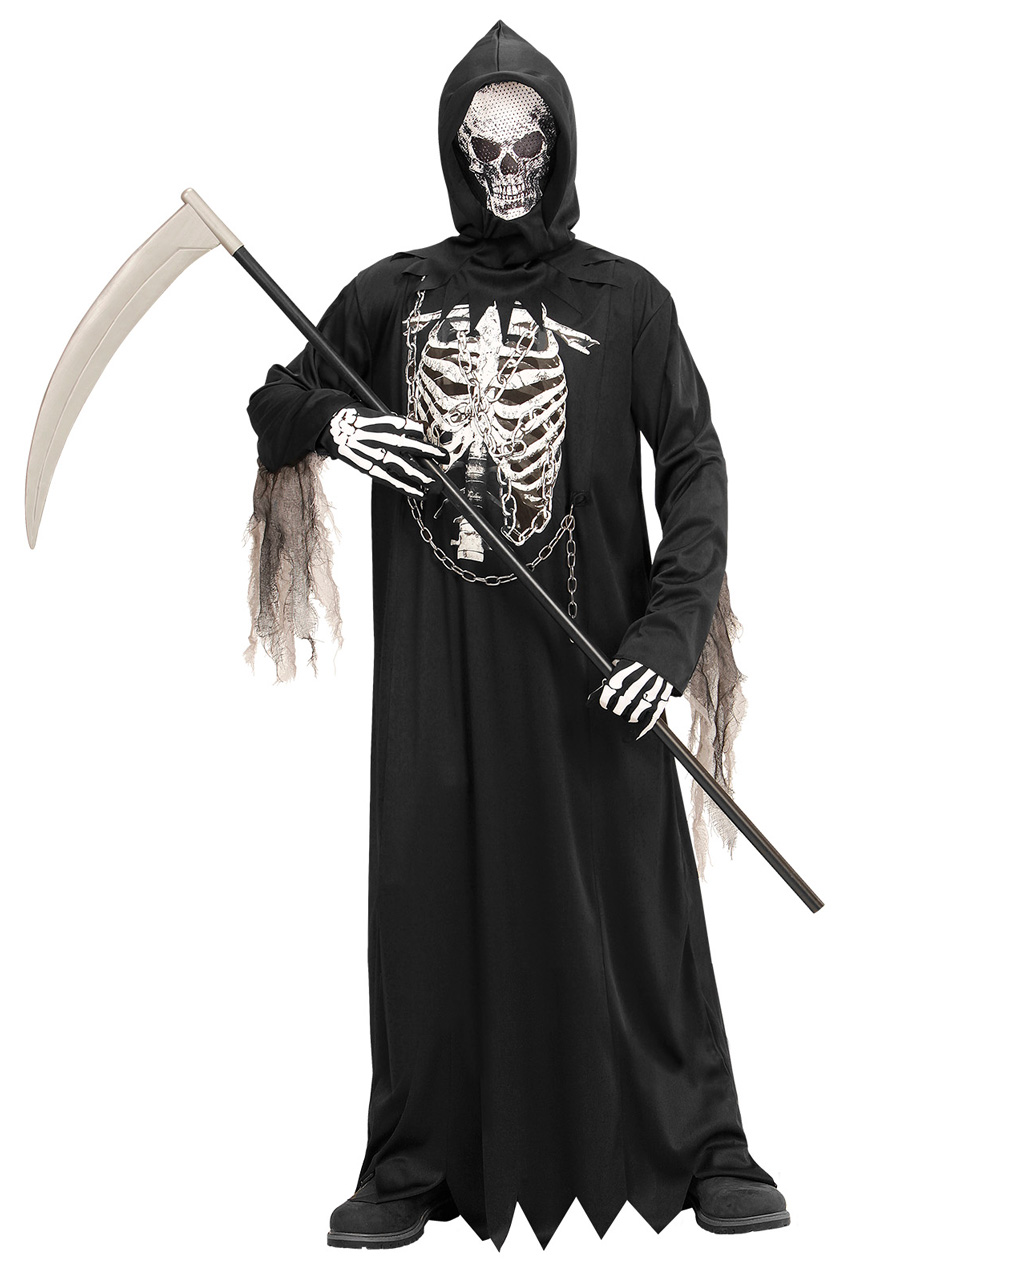 Sensenmann Robe mit Kette  Halloween Kostüm L / 11-13 Jahre von Horror-Shop.com